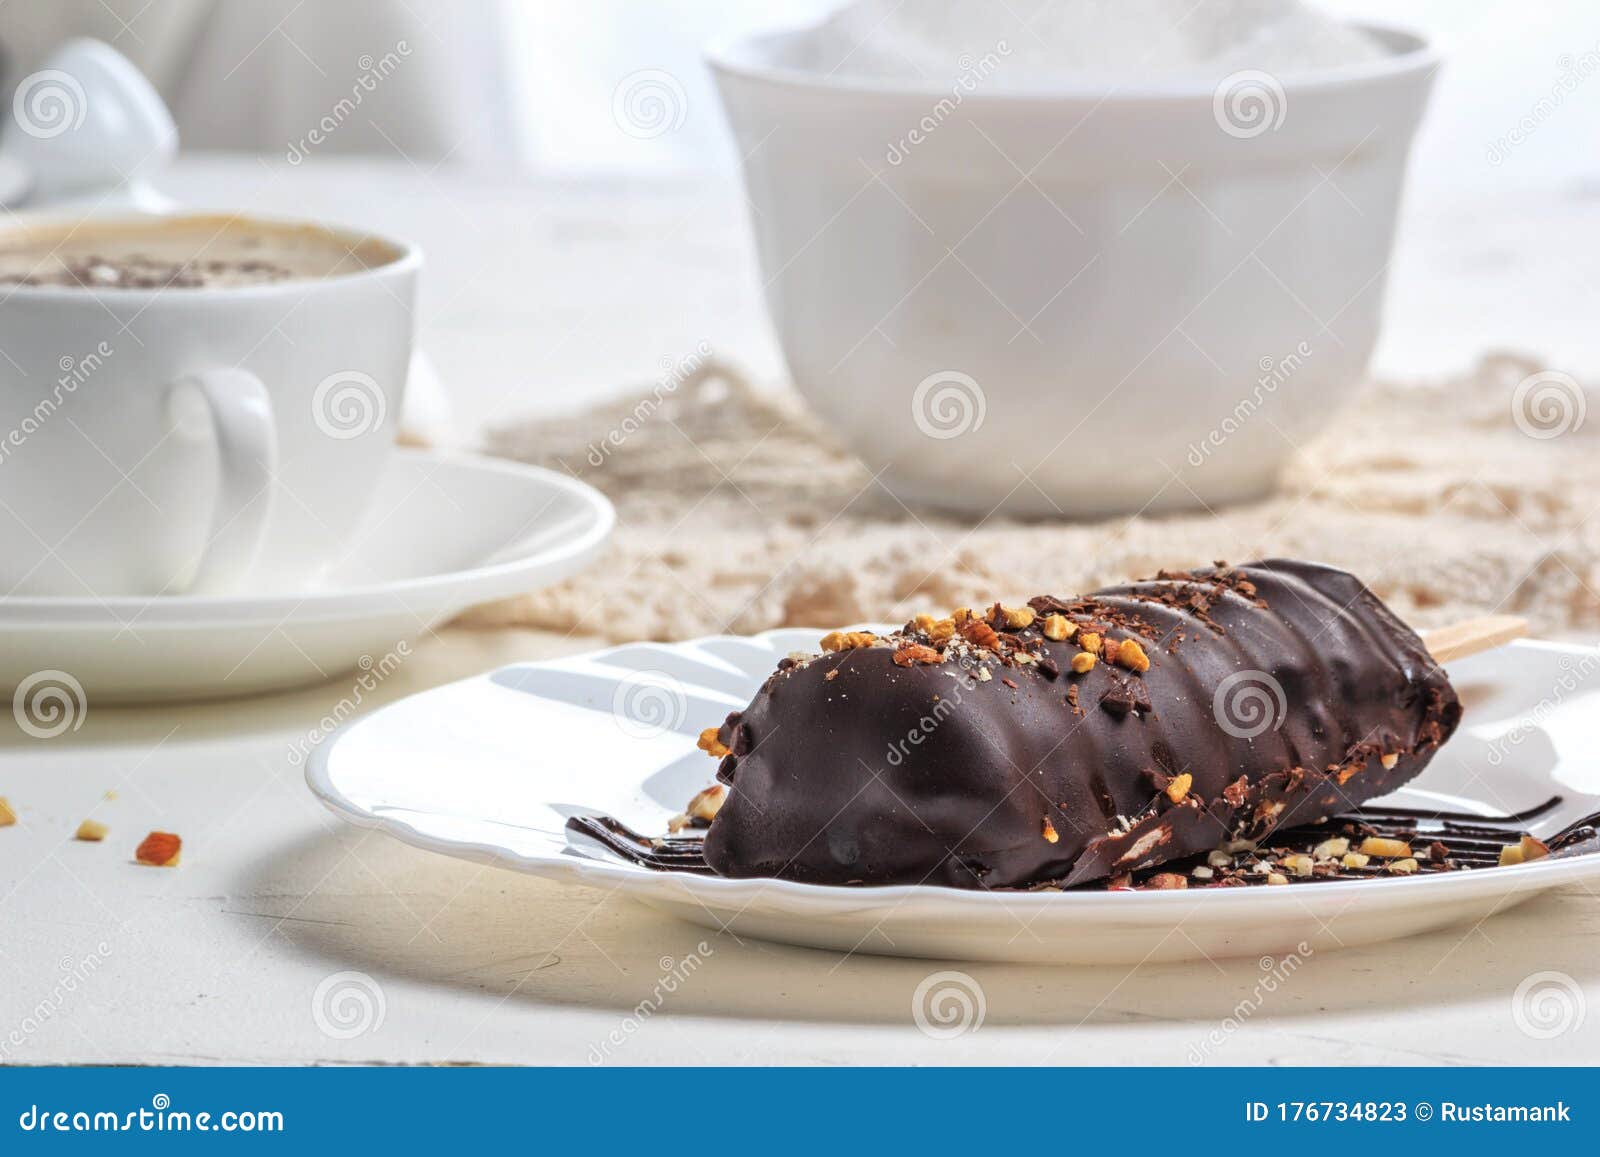 Bolo De Chocolate Em Forma De Teclado Com Rato Foto de Stock